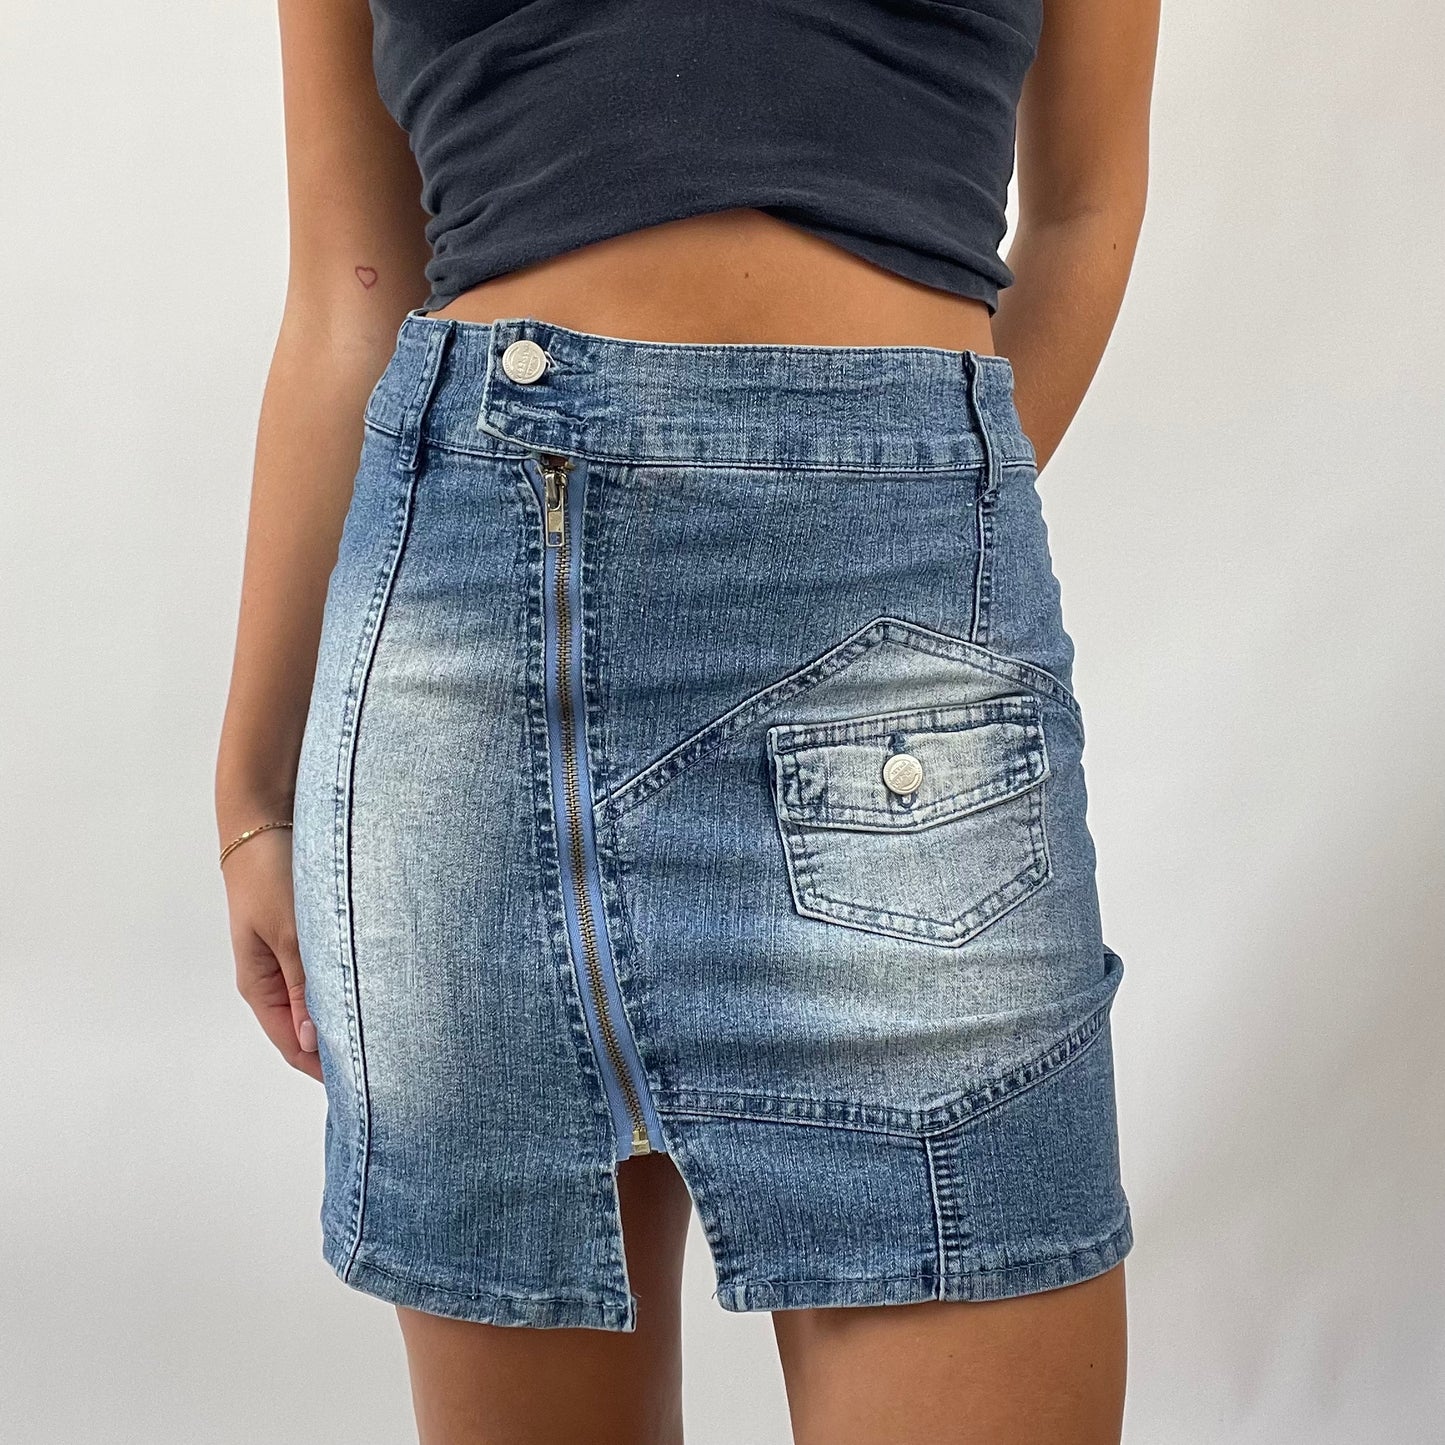 FRESHERS FITS DROP | small blue denim zip skirt